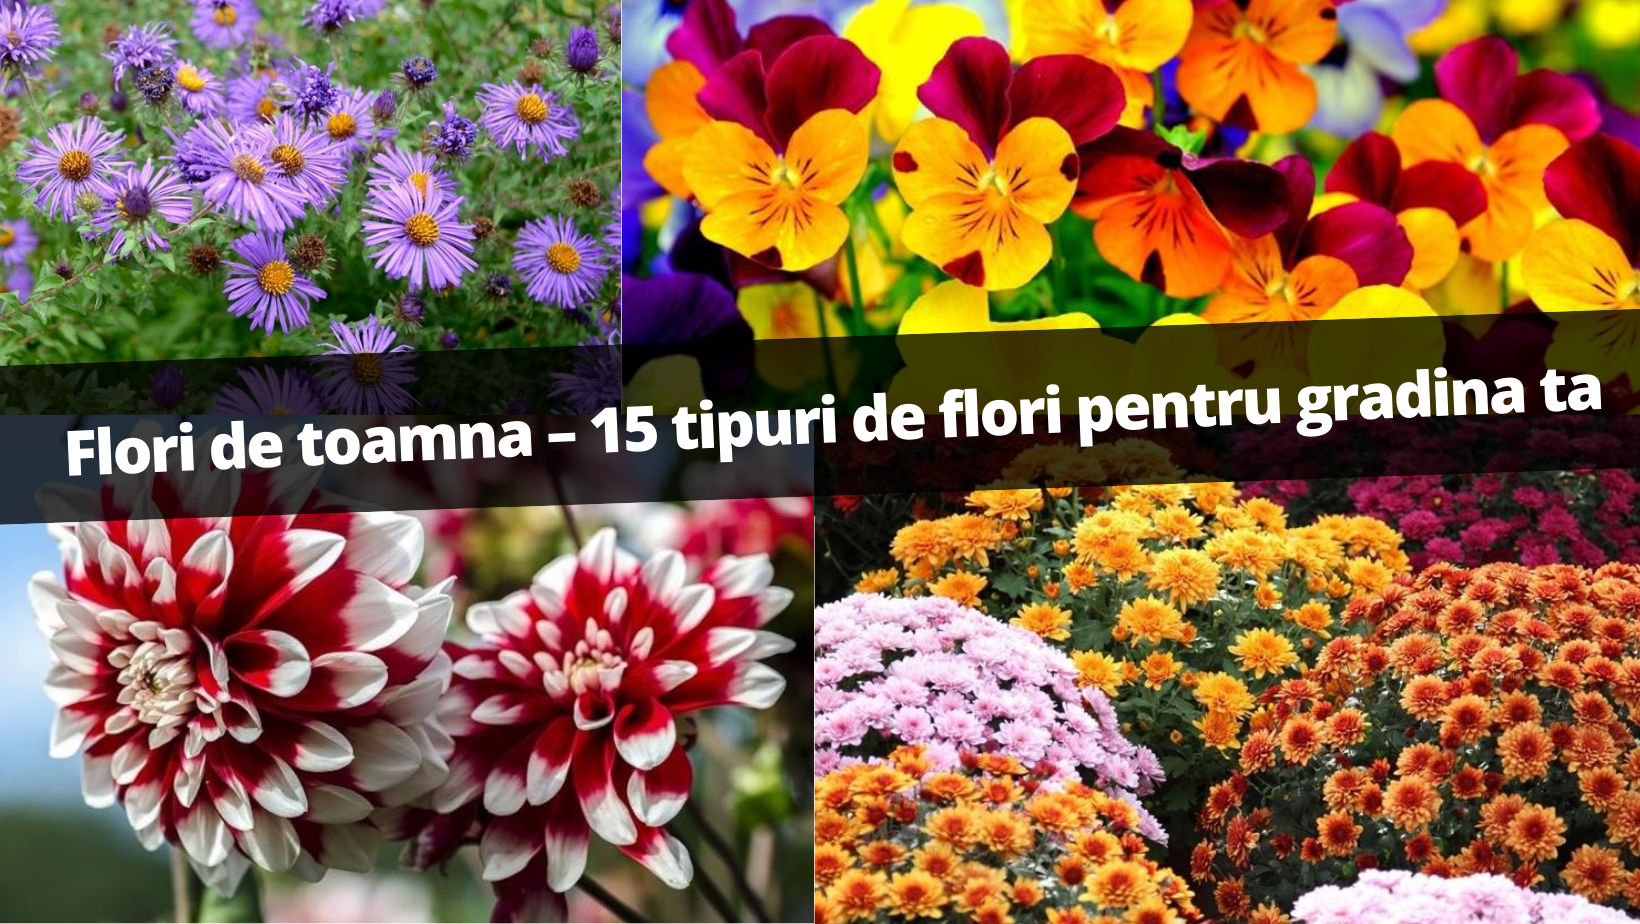 Flori de toamna – 15 tipuri de flori pentru gradina ta